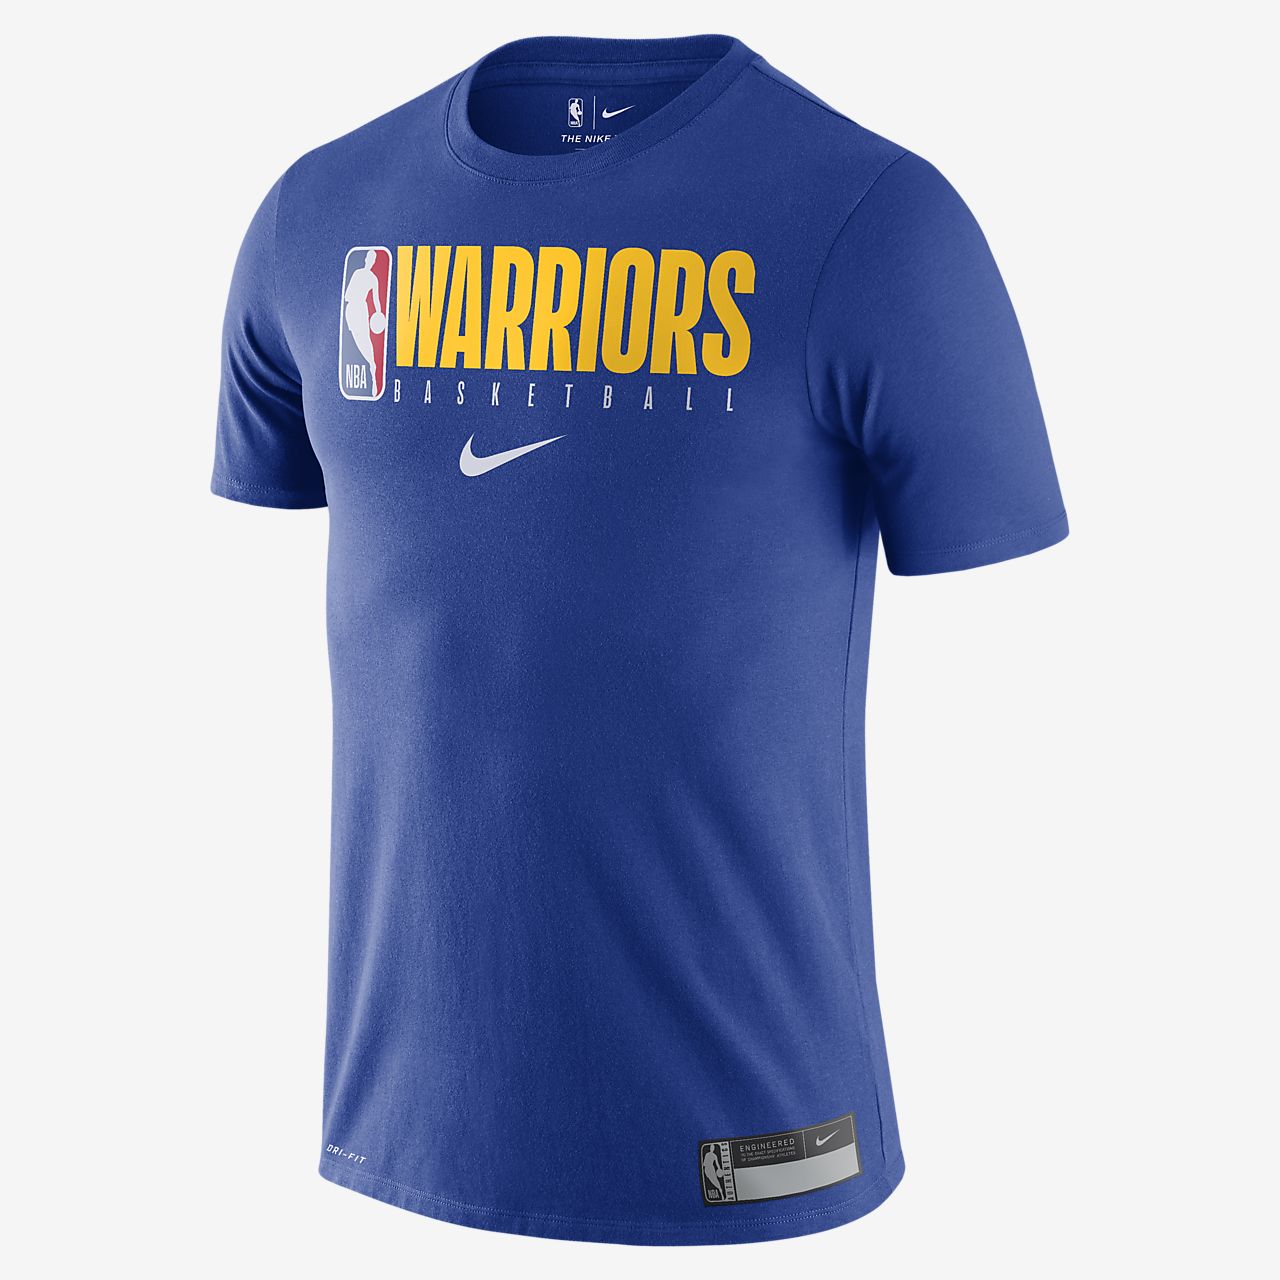 golden state warriors t shirt cheap